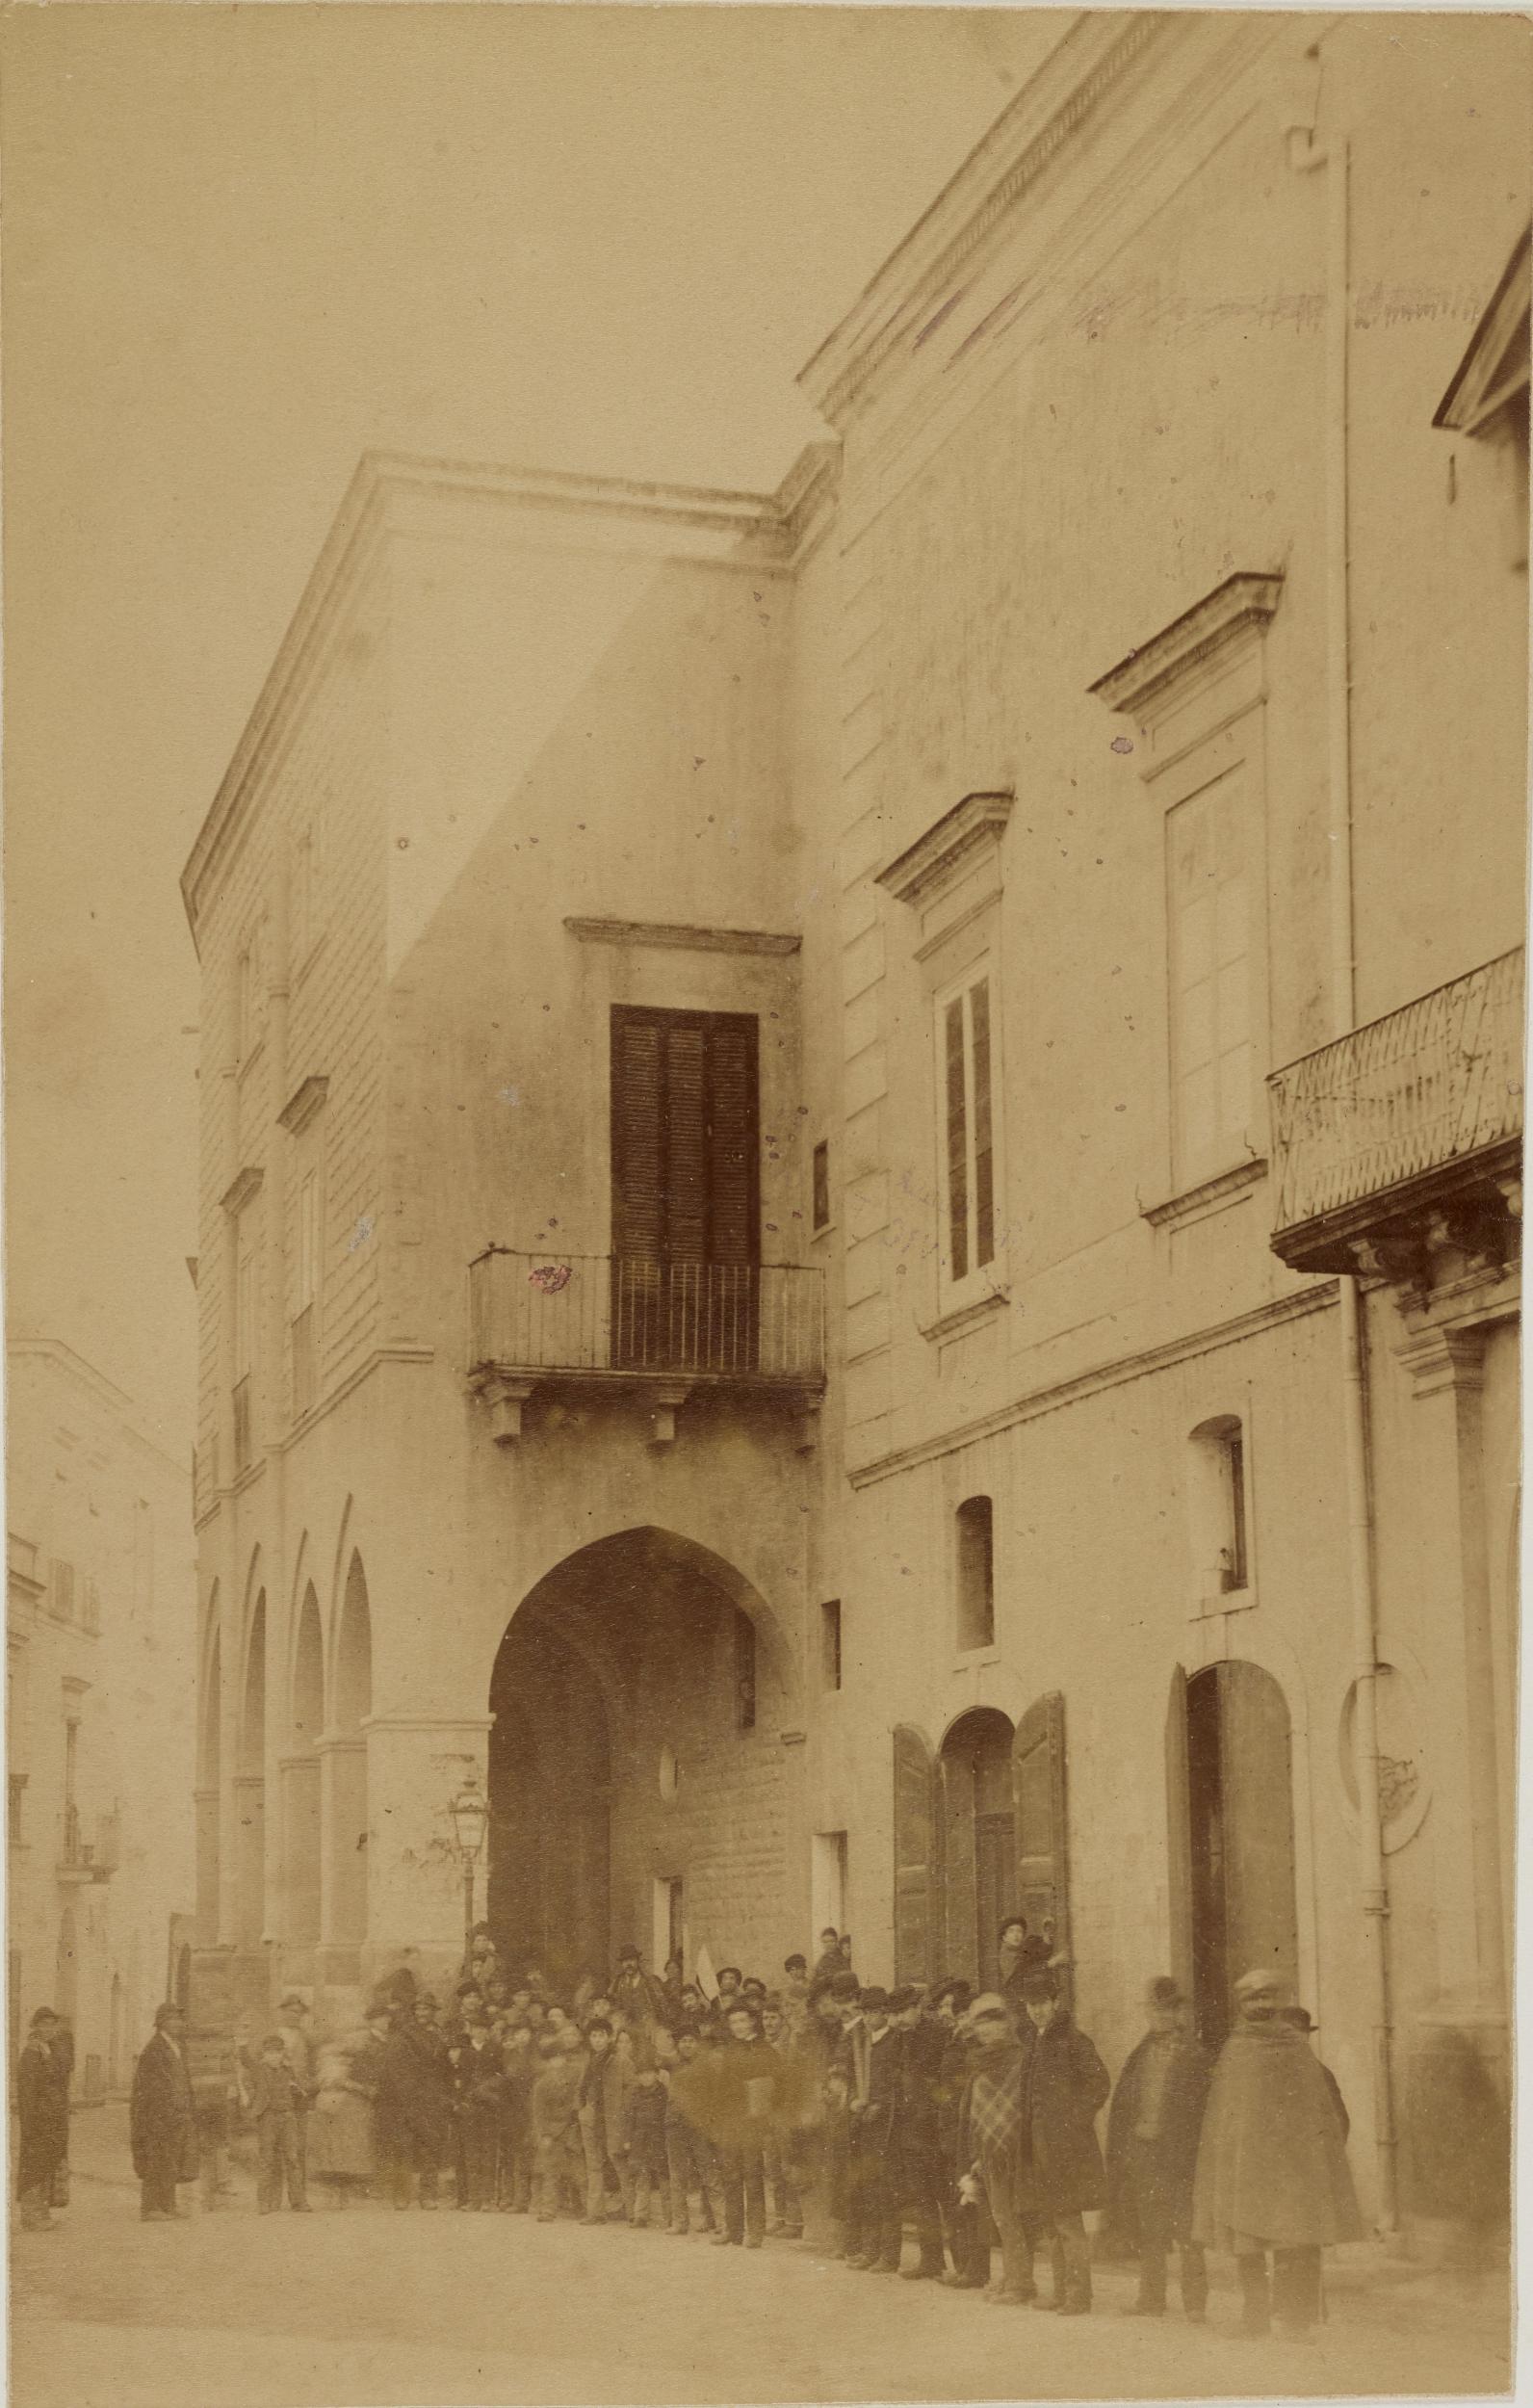 Fotografo non identificato, Barletta - Palazzo bonelli, facciata, 1851-1875, carbone, MPI152542